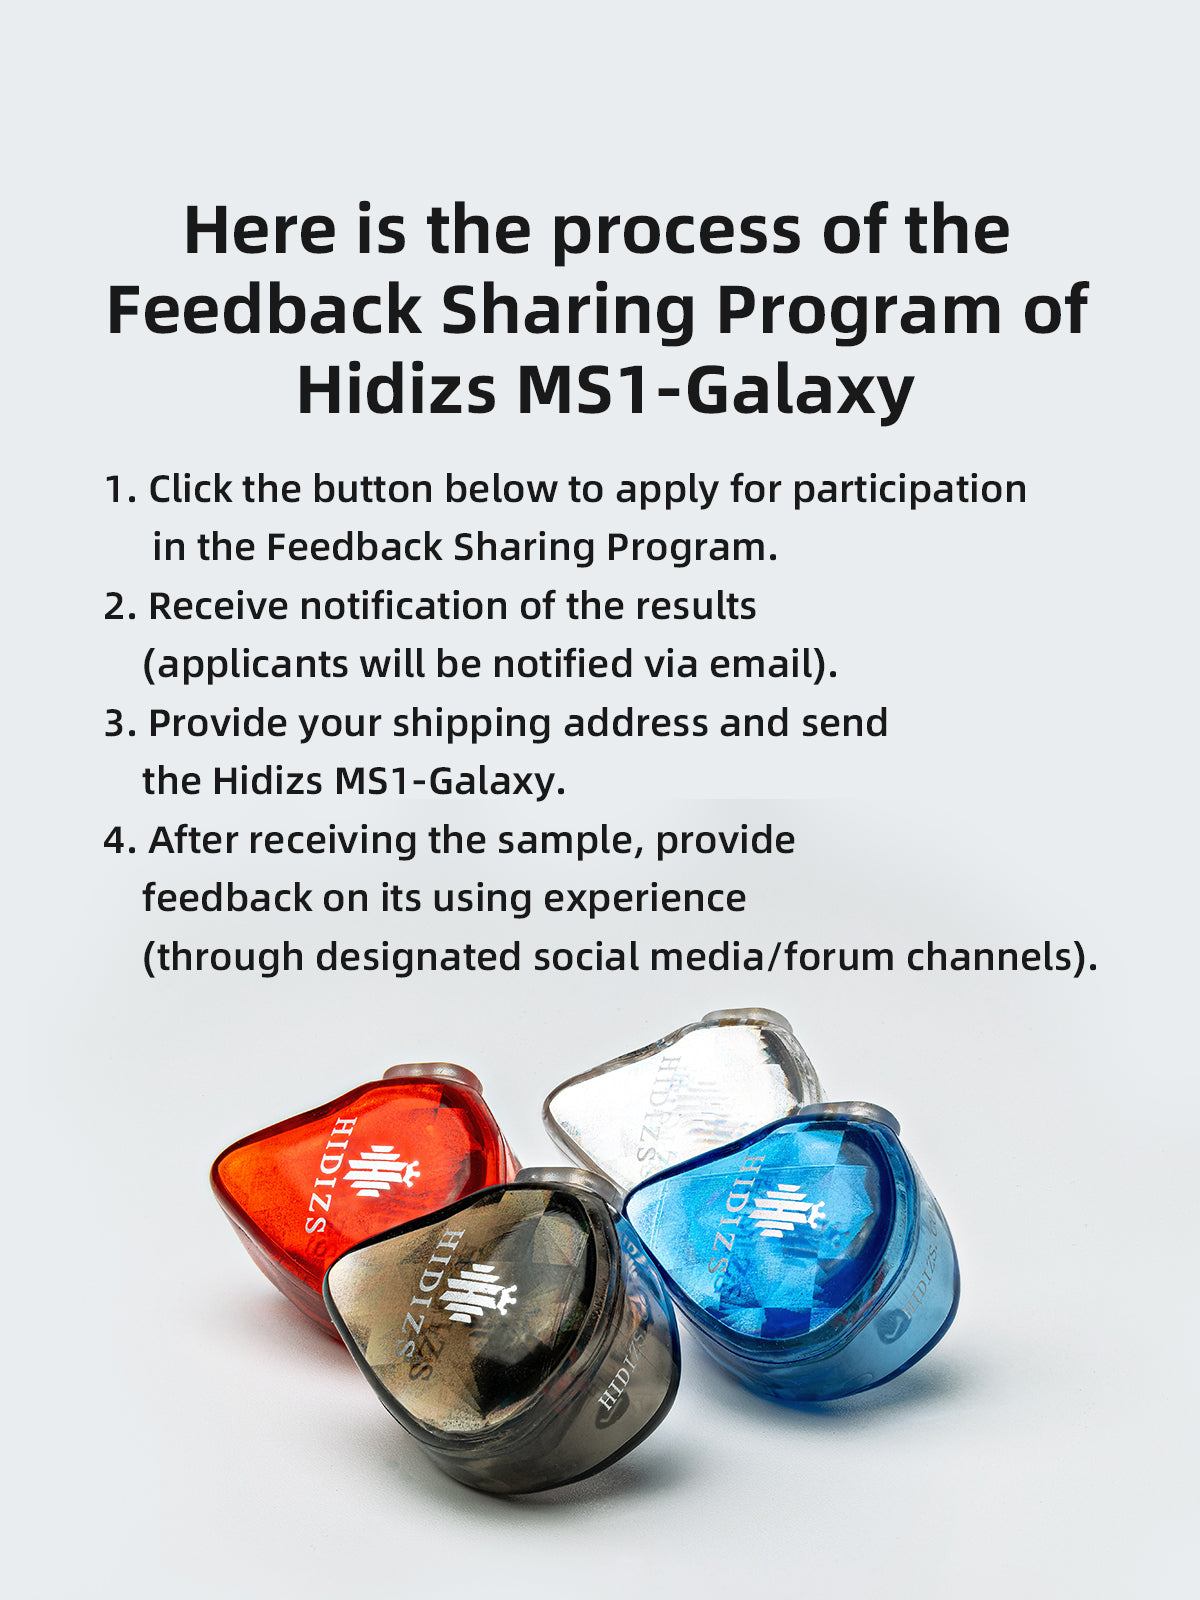 HIDIZS-Hidizs_MS1-Galaxy_Feedback_Sharing_Program-BANNER-230811-04